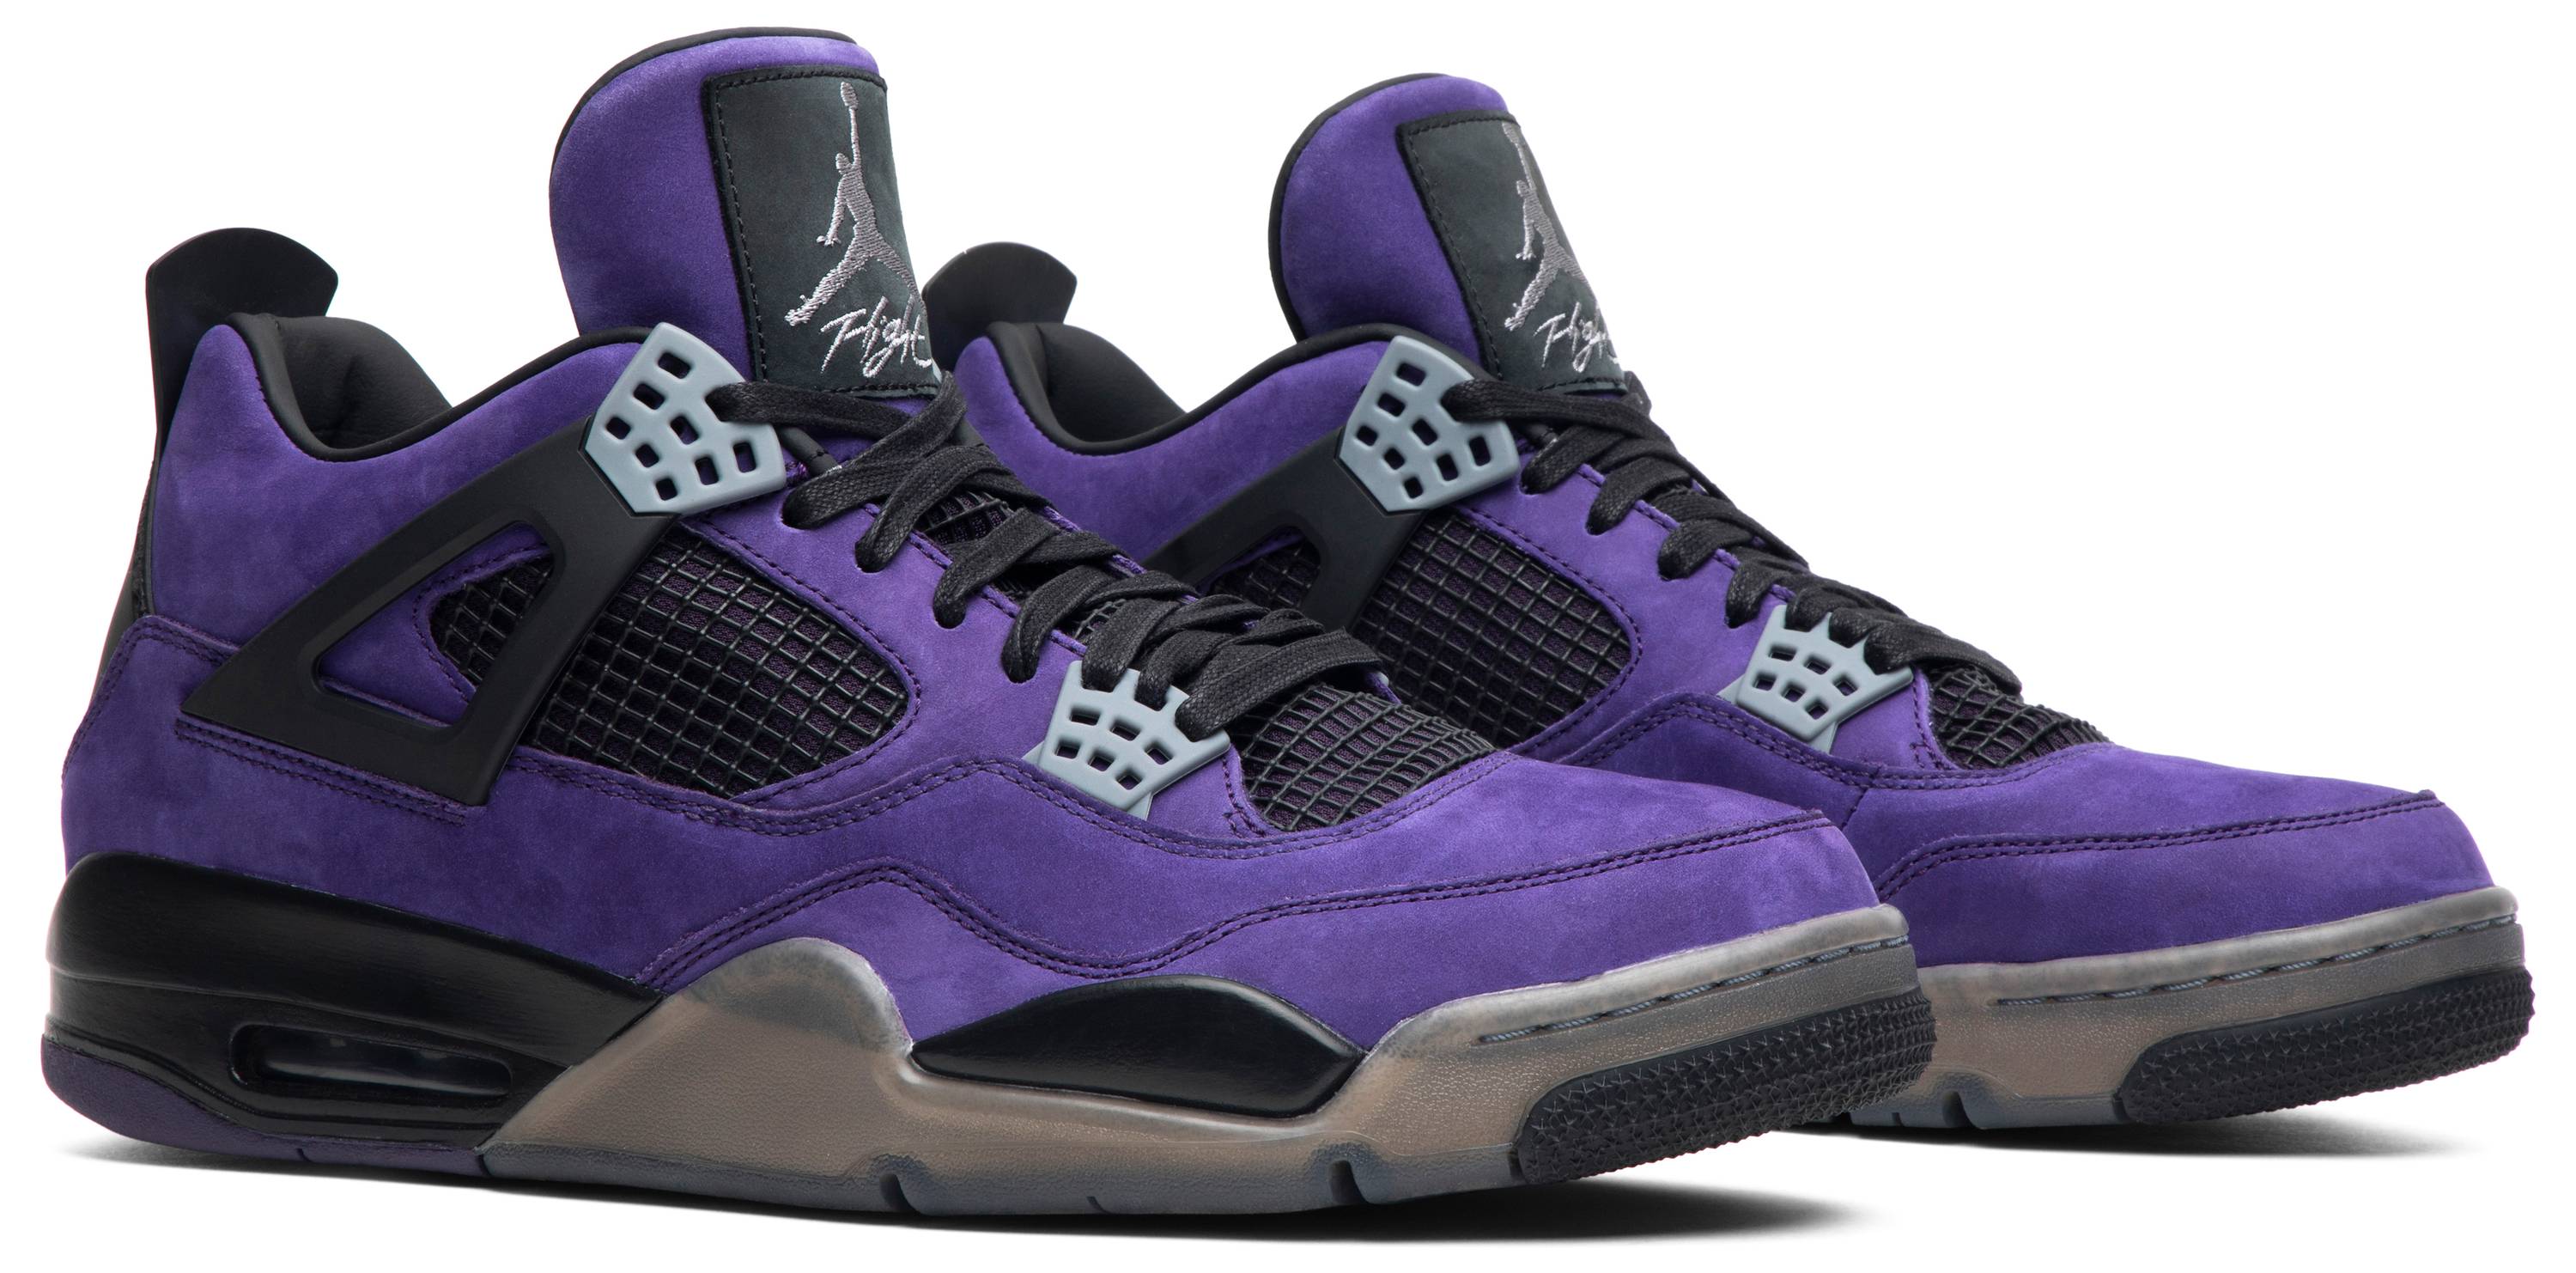 Travis Scott x Air Jordan 4 Retro 'Purple Suede - Black Midsole' - Air